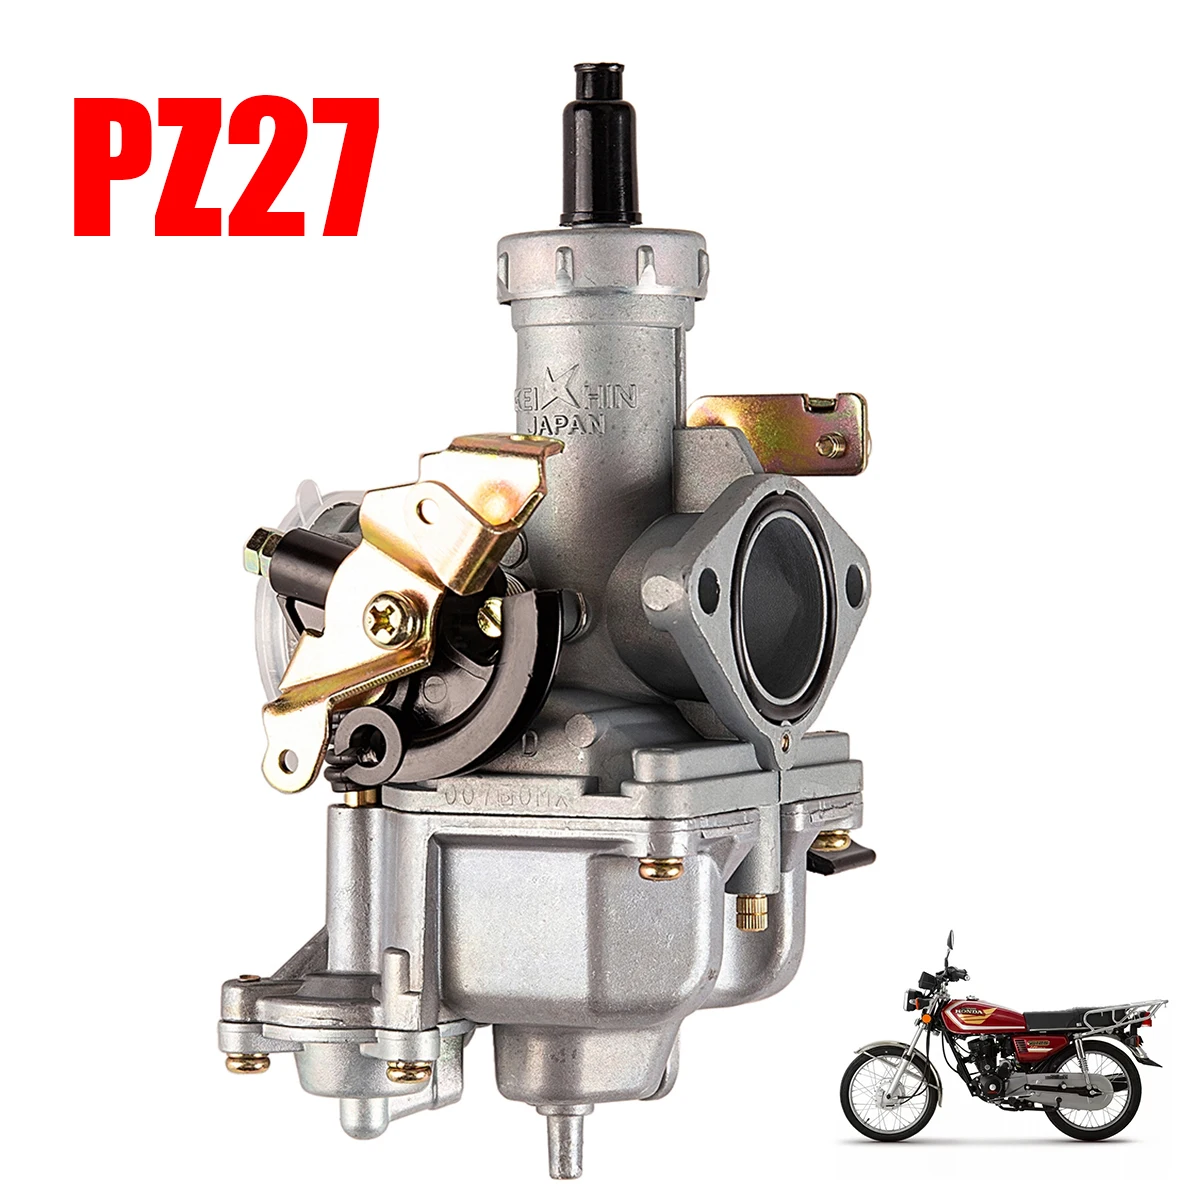 Carburador para motocicleta Keihin PZ27, utilizado para Honda CG125, 175CC, 200cc, 250cc, moto de cross